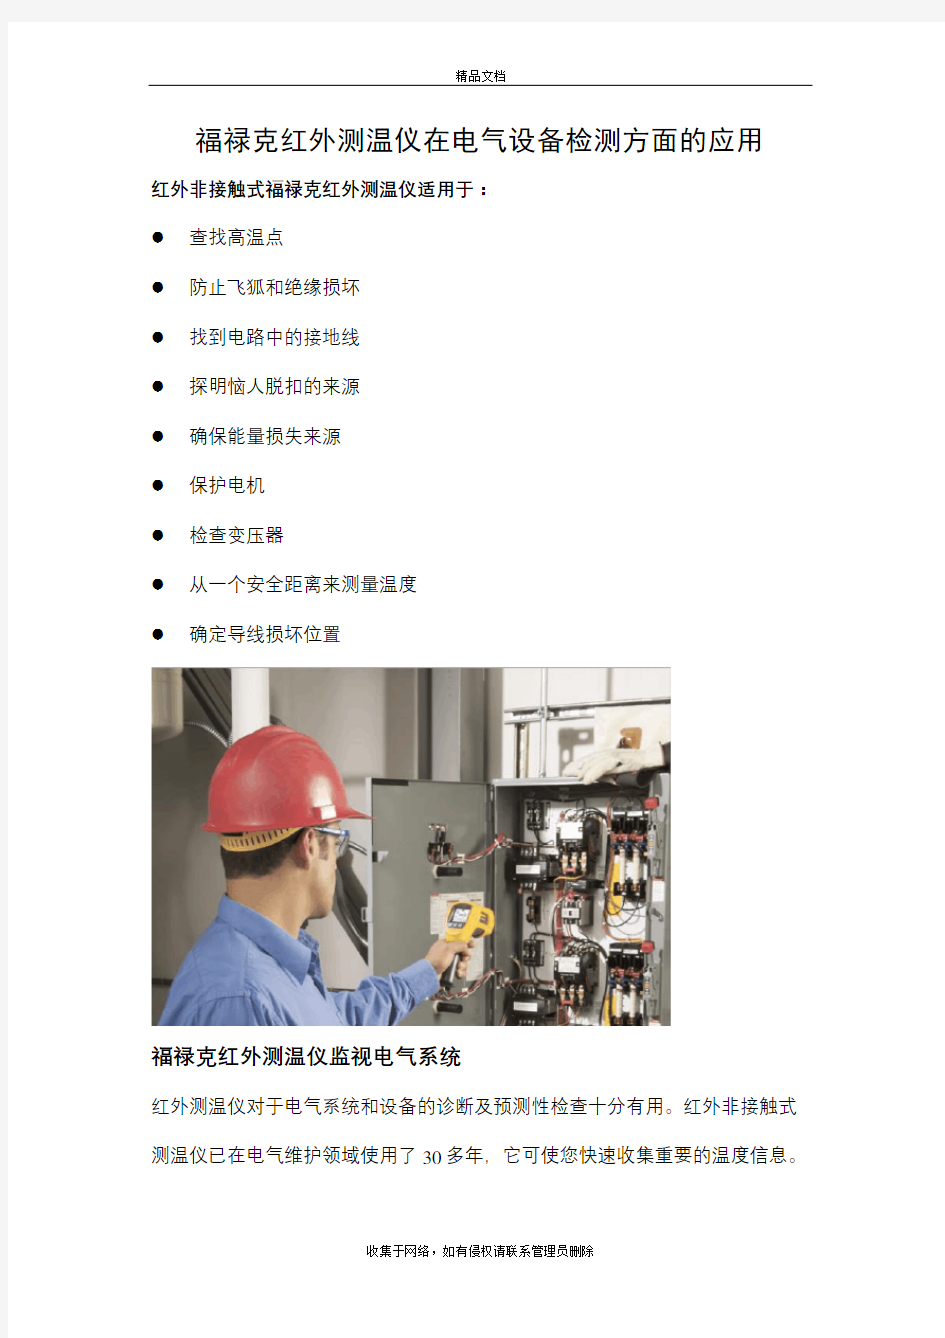 介绍福禄克红外测温仪在电气设备检测方面的应用教学文案